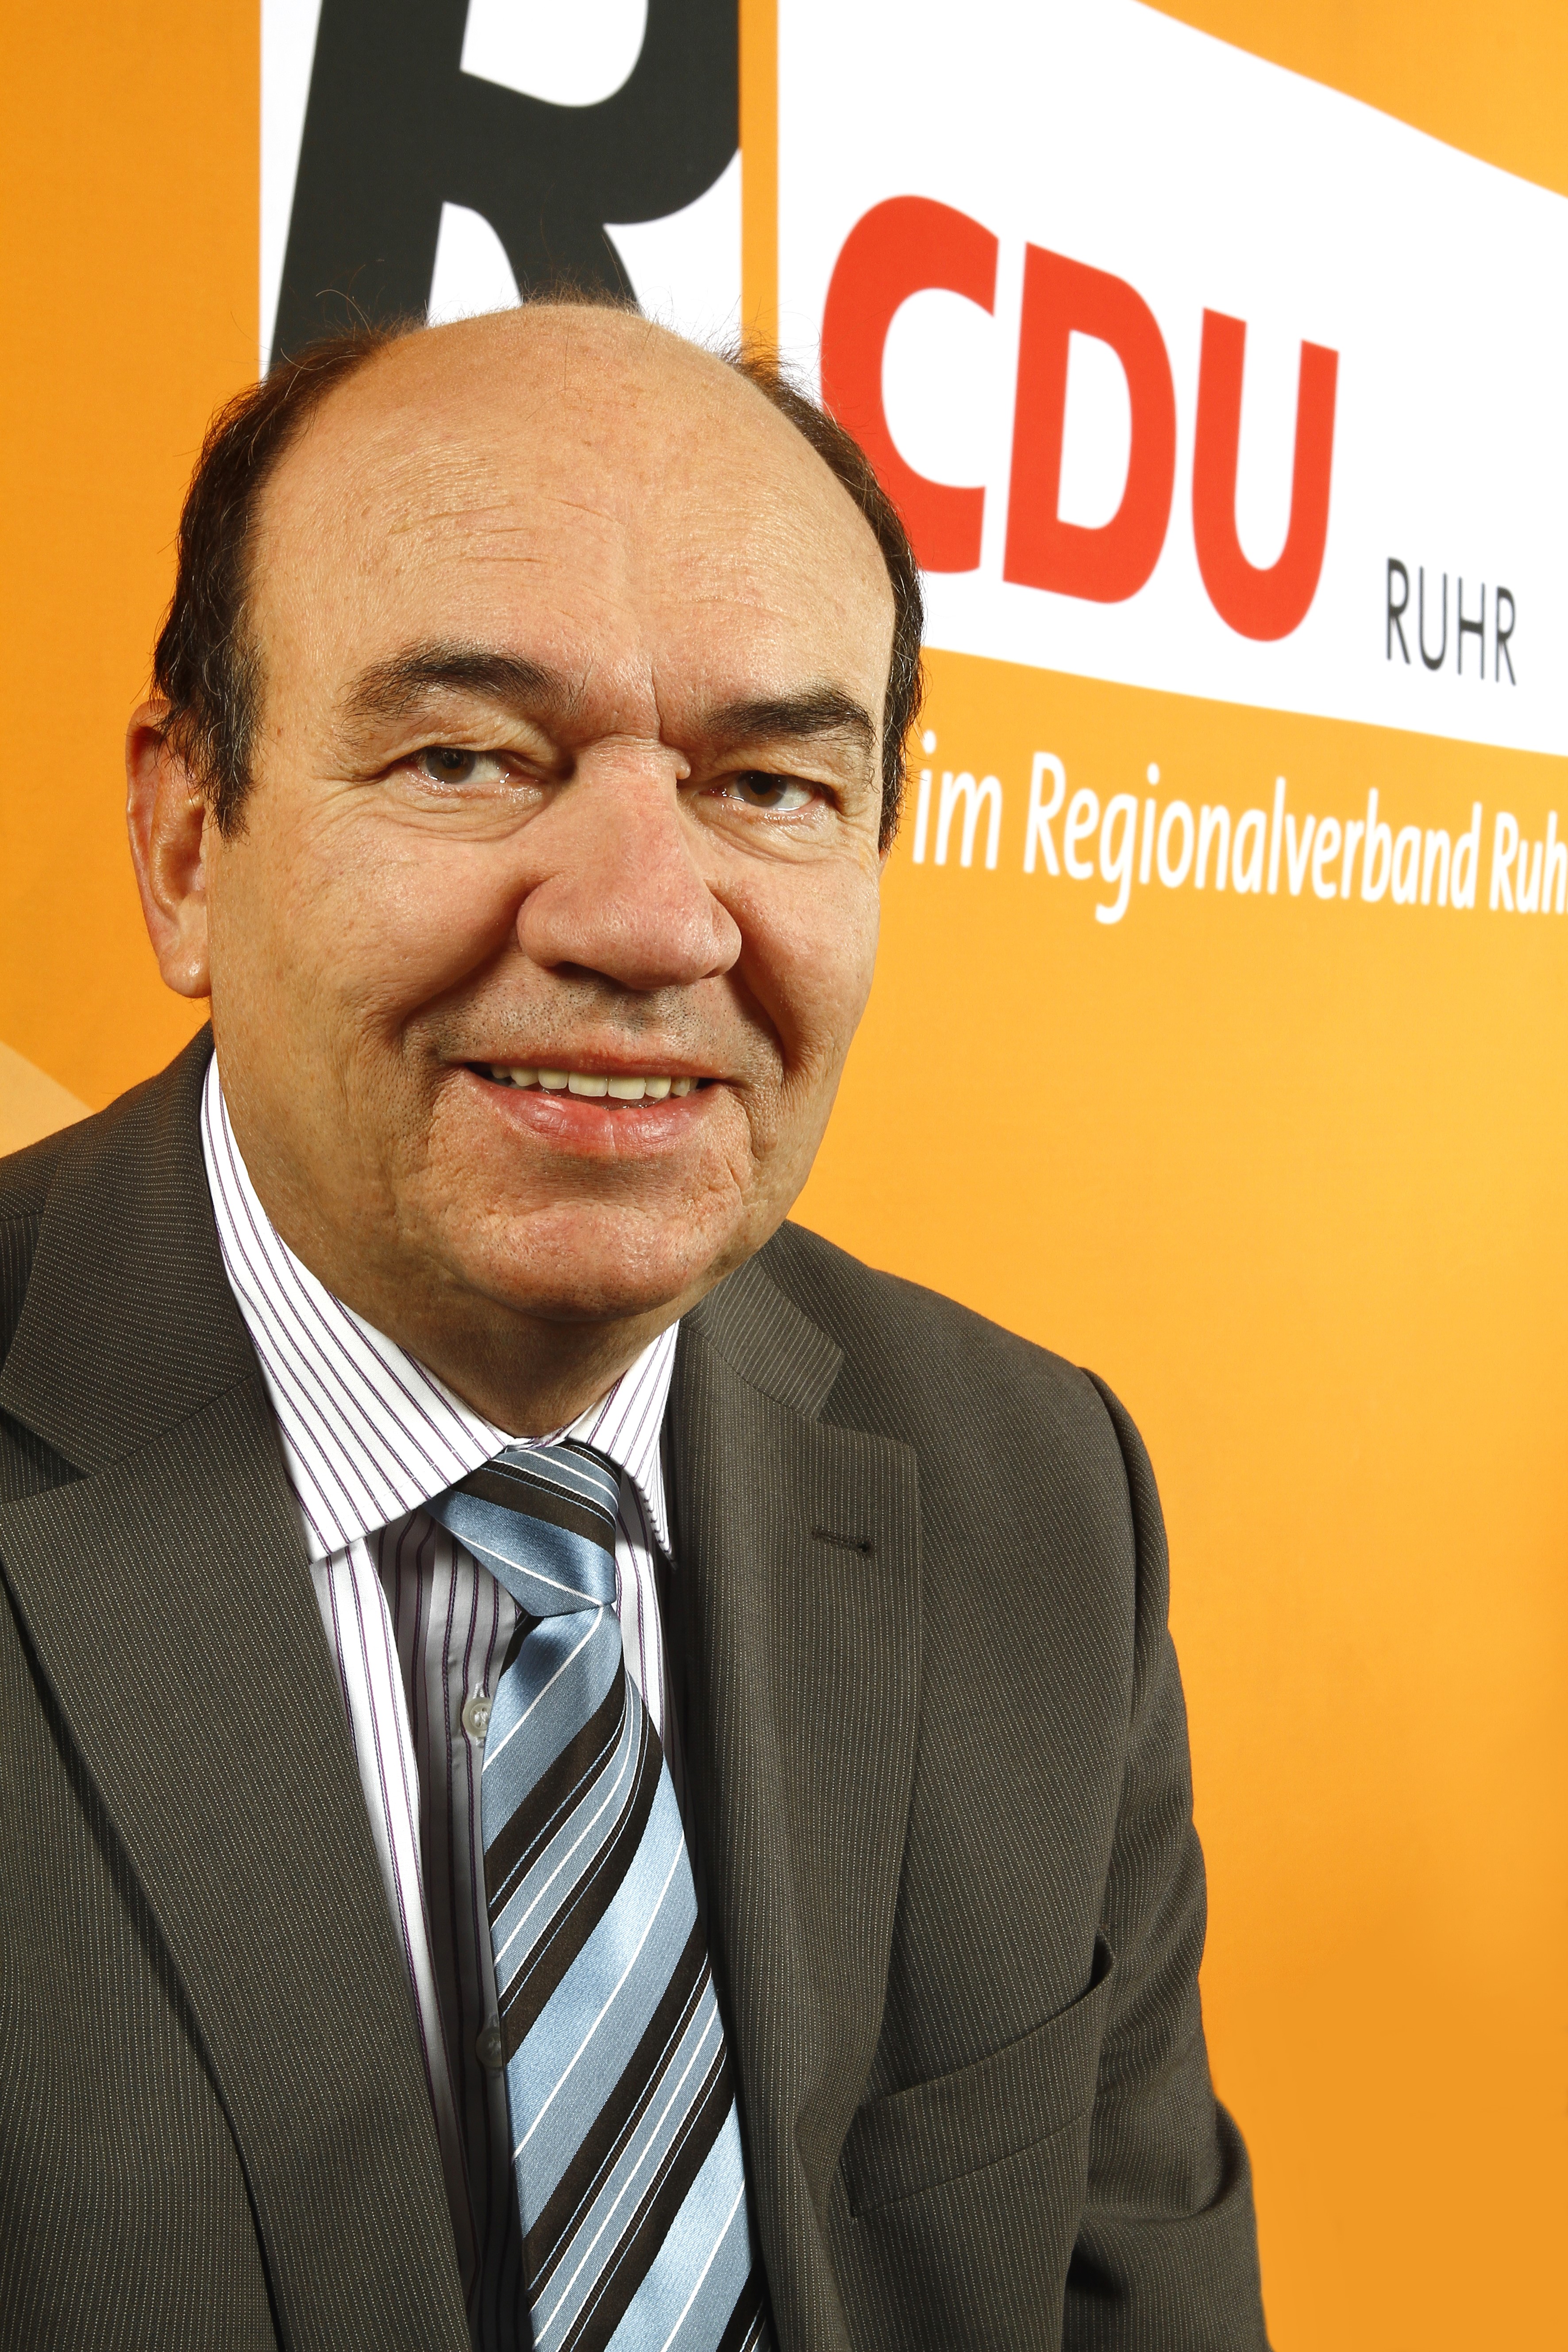 CDU-Fraktionsvorsitzender Roland Mitschke (Foto: CDU-Ruhr)